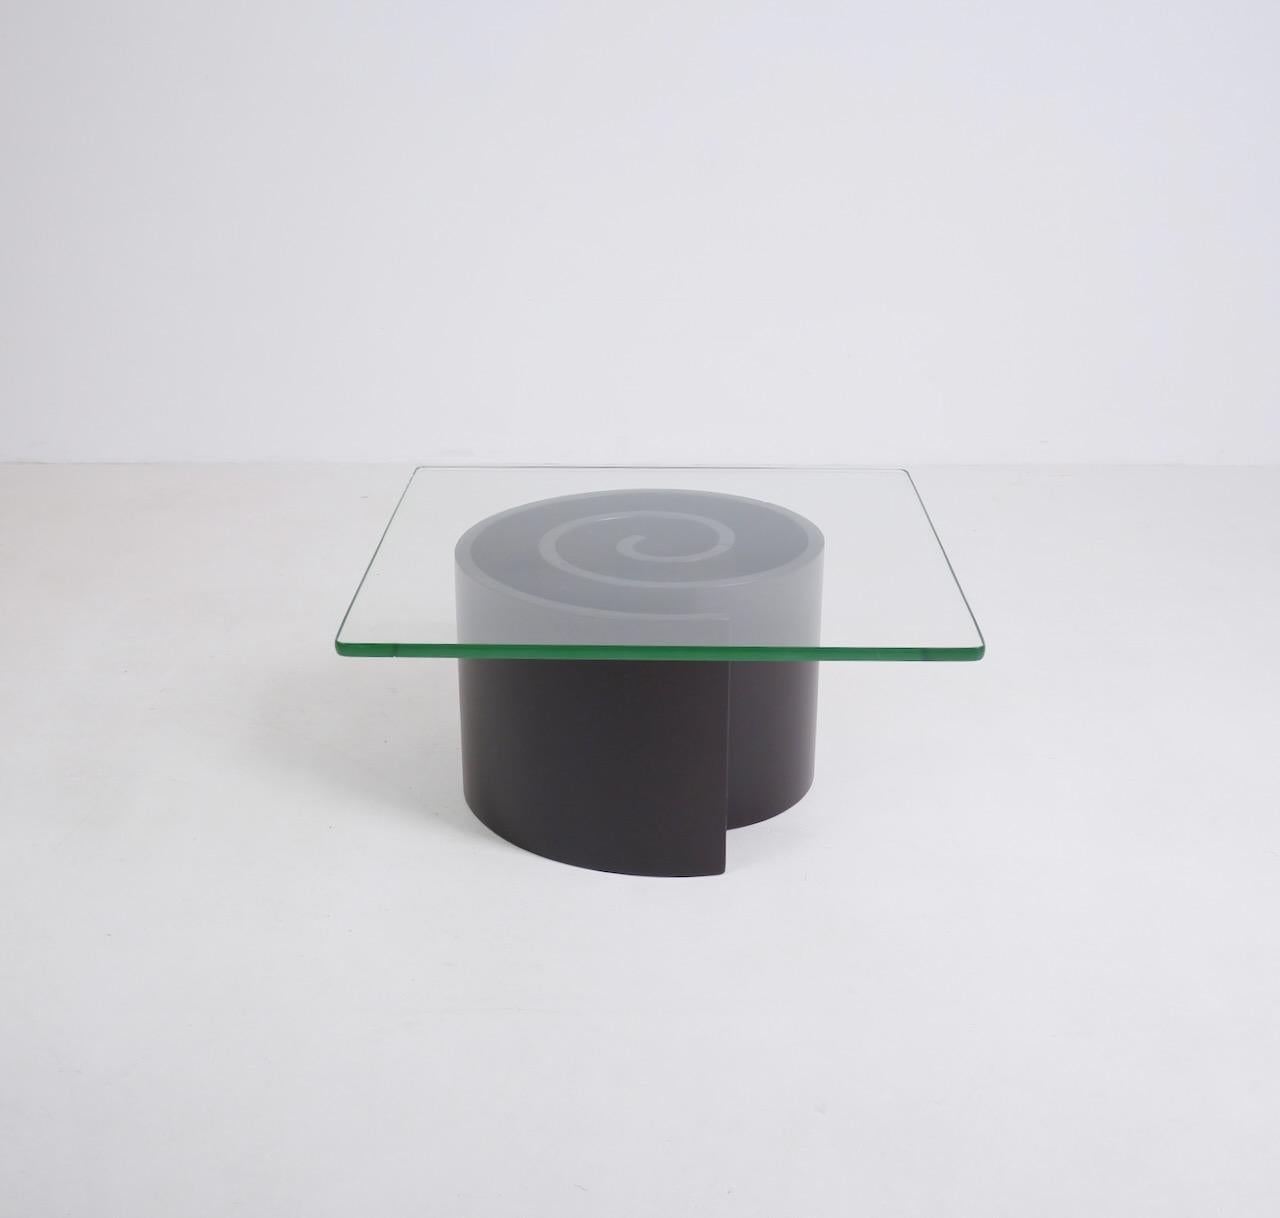 Une table basse en bois et verre laqué brun foncé, en forme de spirale, d'après la table escargot de Vladimir Kagan. La base est composée de 4 éléments en bois incurvés distincts qui s'accrochent les uns aux autres pour former une spirale. Le